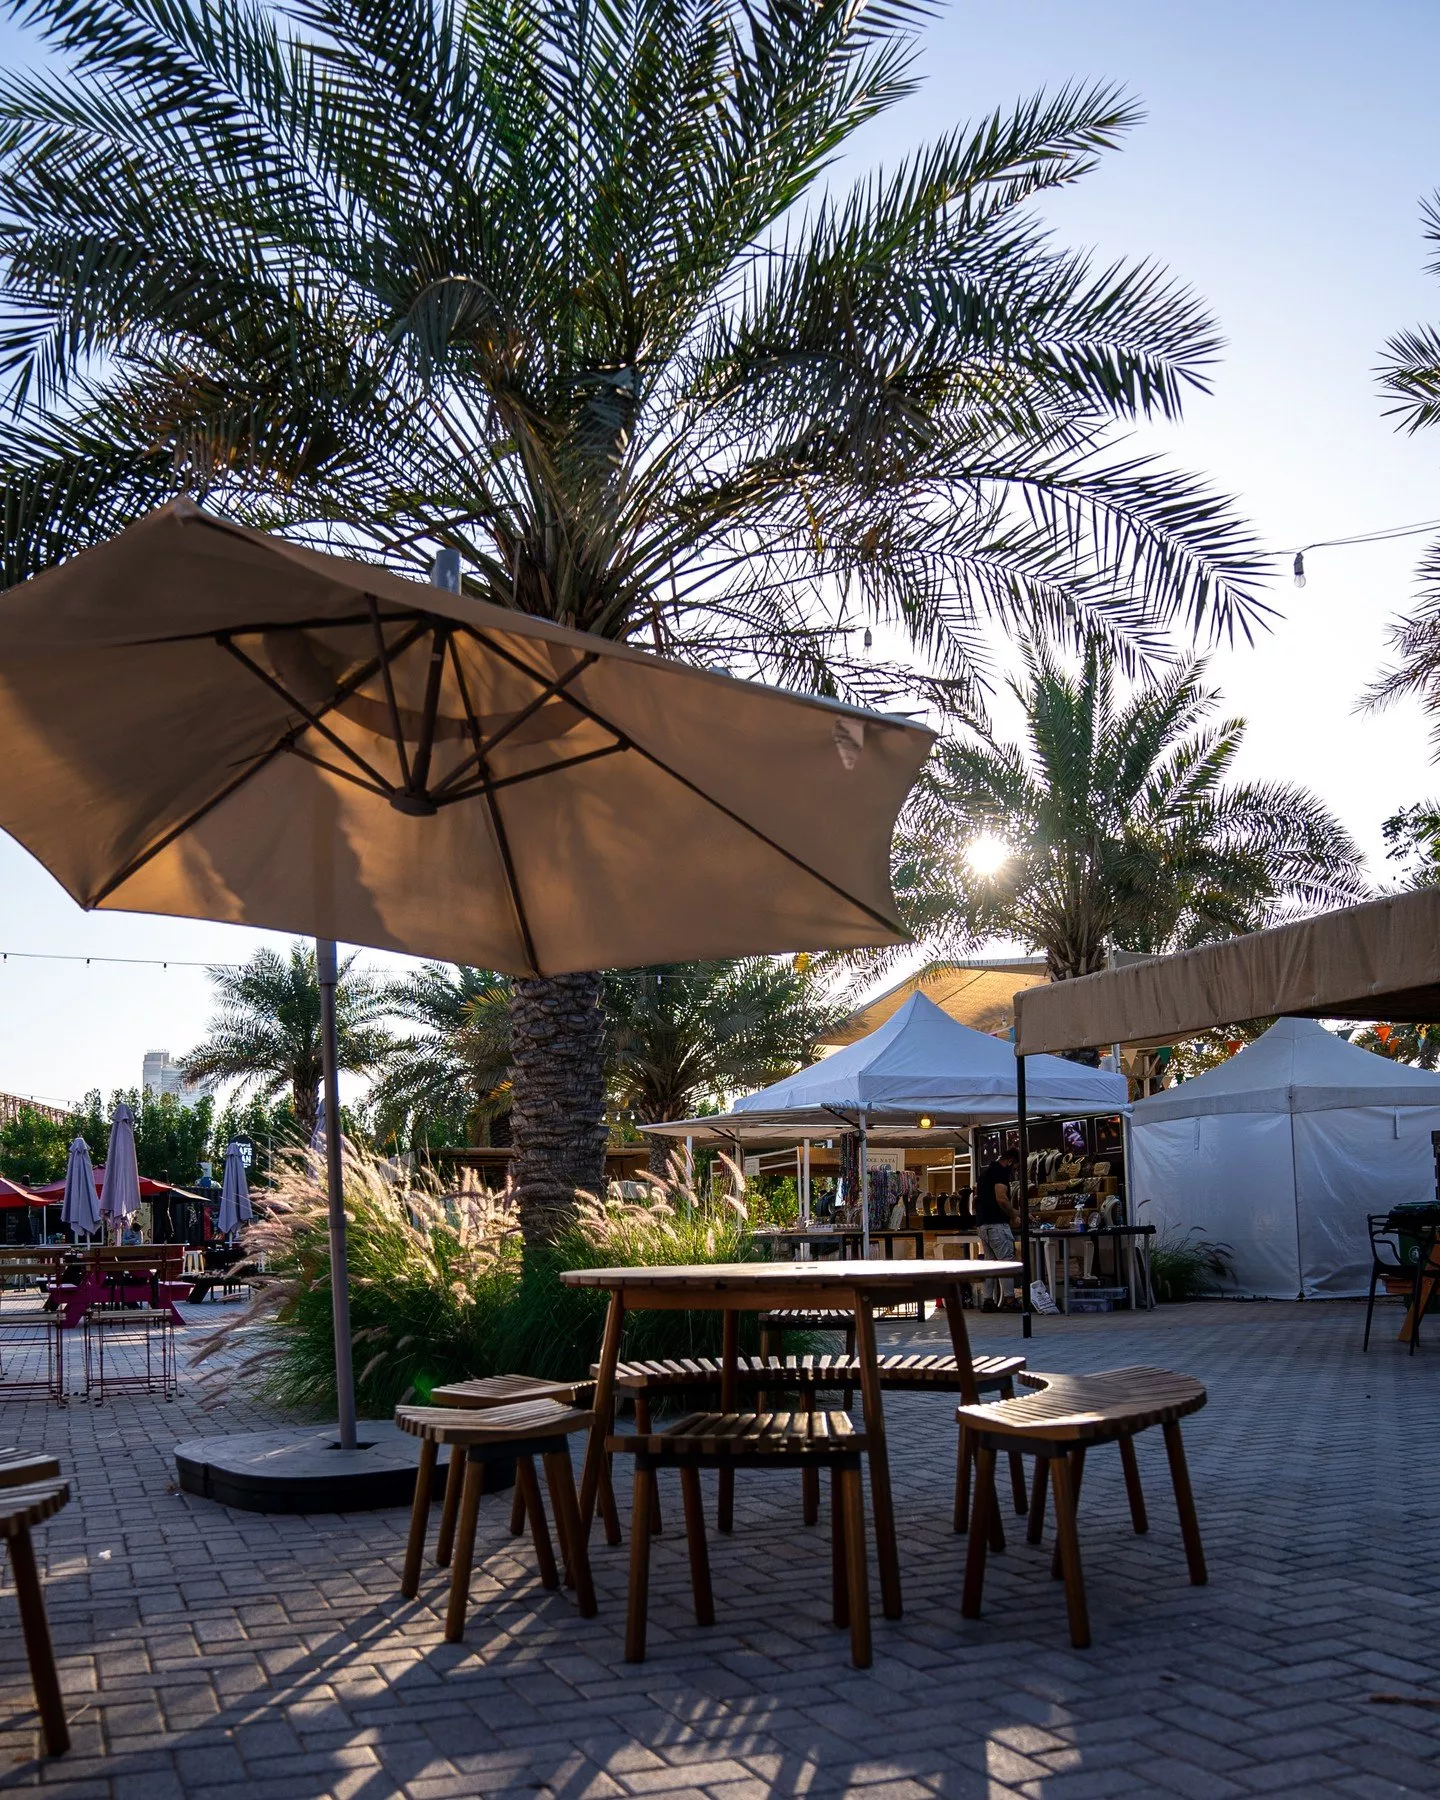 أفضل 10 محلات تقدم القهوة المثلجة في الإمارات